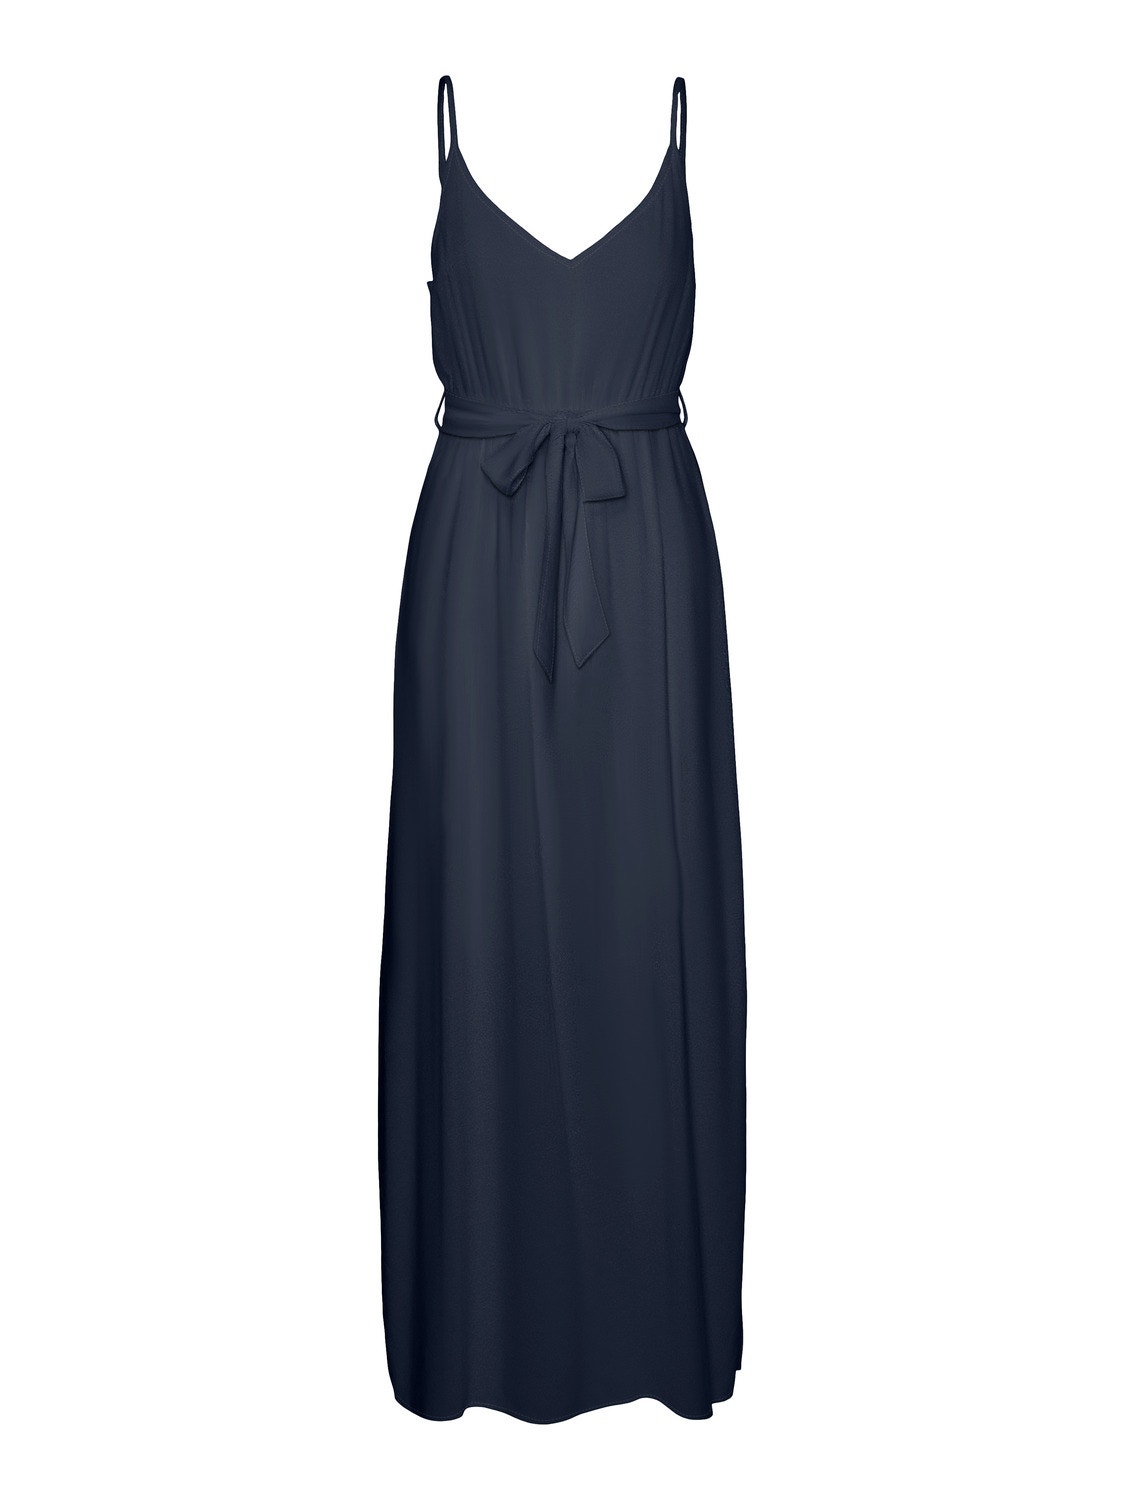 Vero Moda VMEASY Lange jurk -Black - 10307995